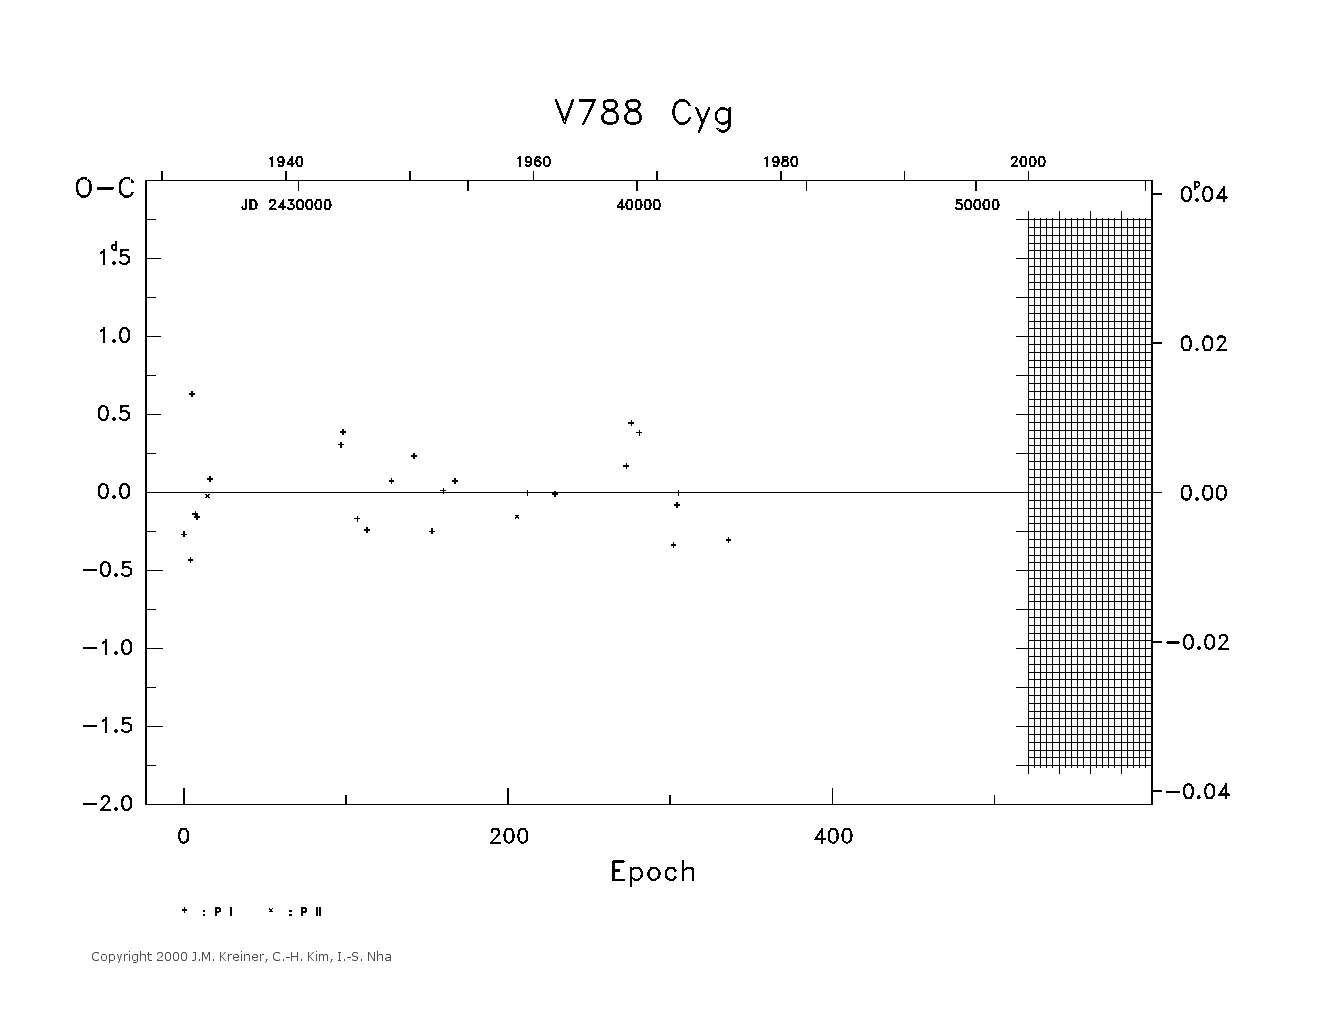 [IMAGE: large V788 CYG O-C diagram]